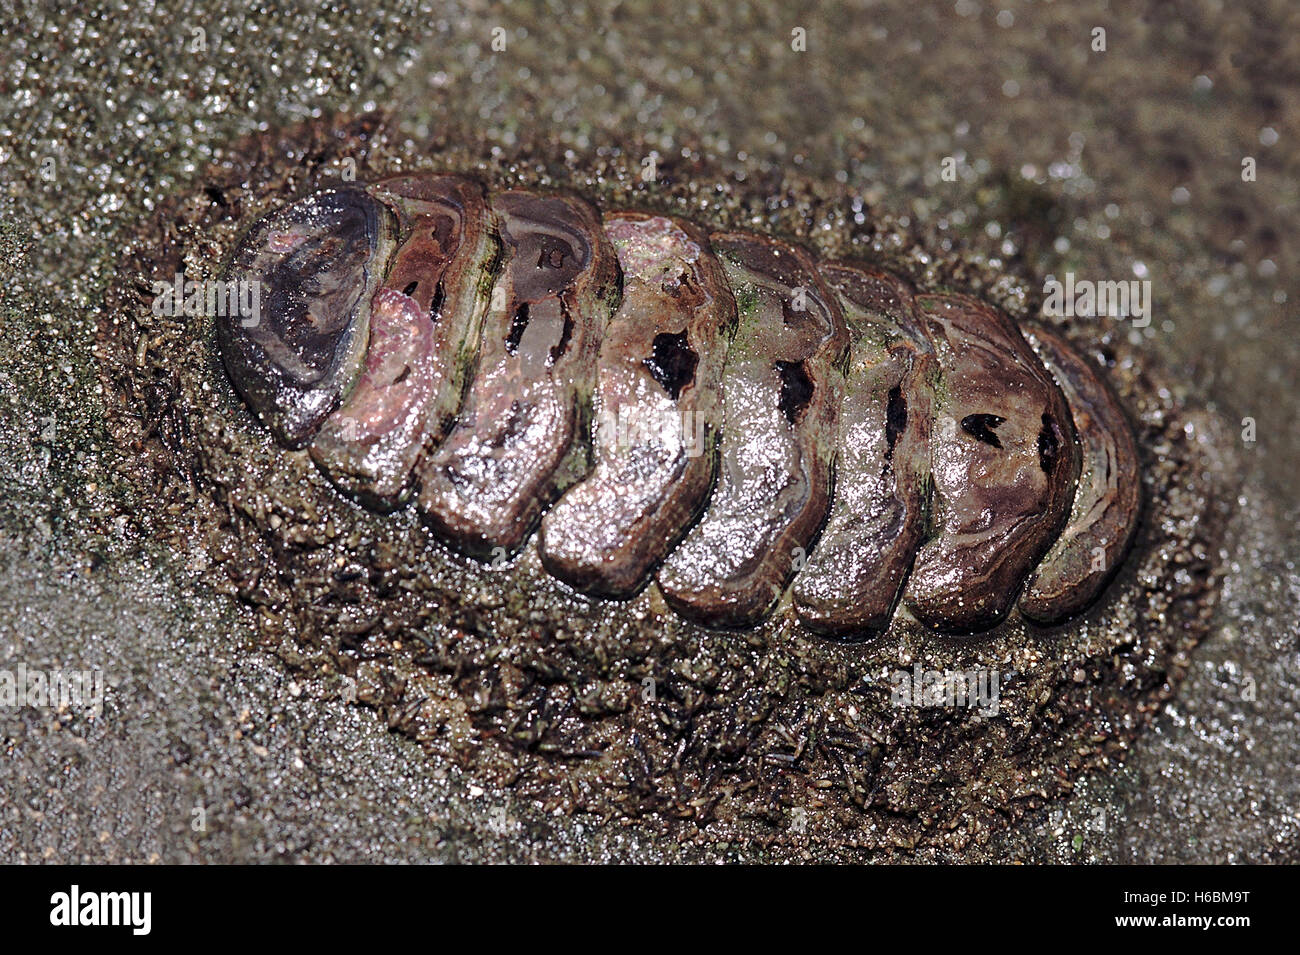 Chiton. c'est un mollusque très primitif avec le shell composé d'un certain nombre de plaques. chitons sont trouvés sur les rivages rocailleux. Banque D'Images